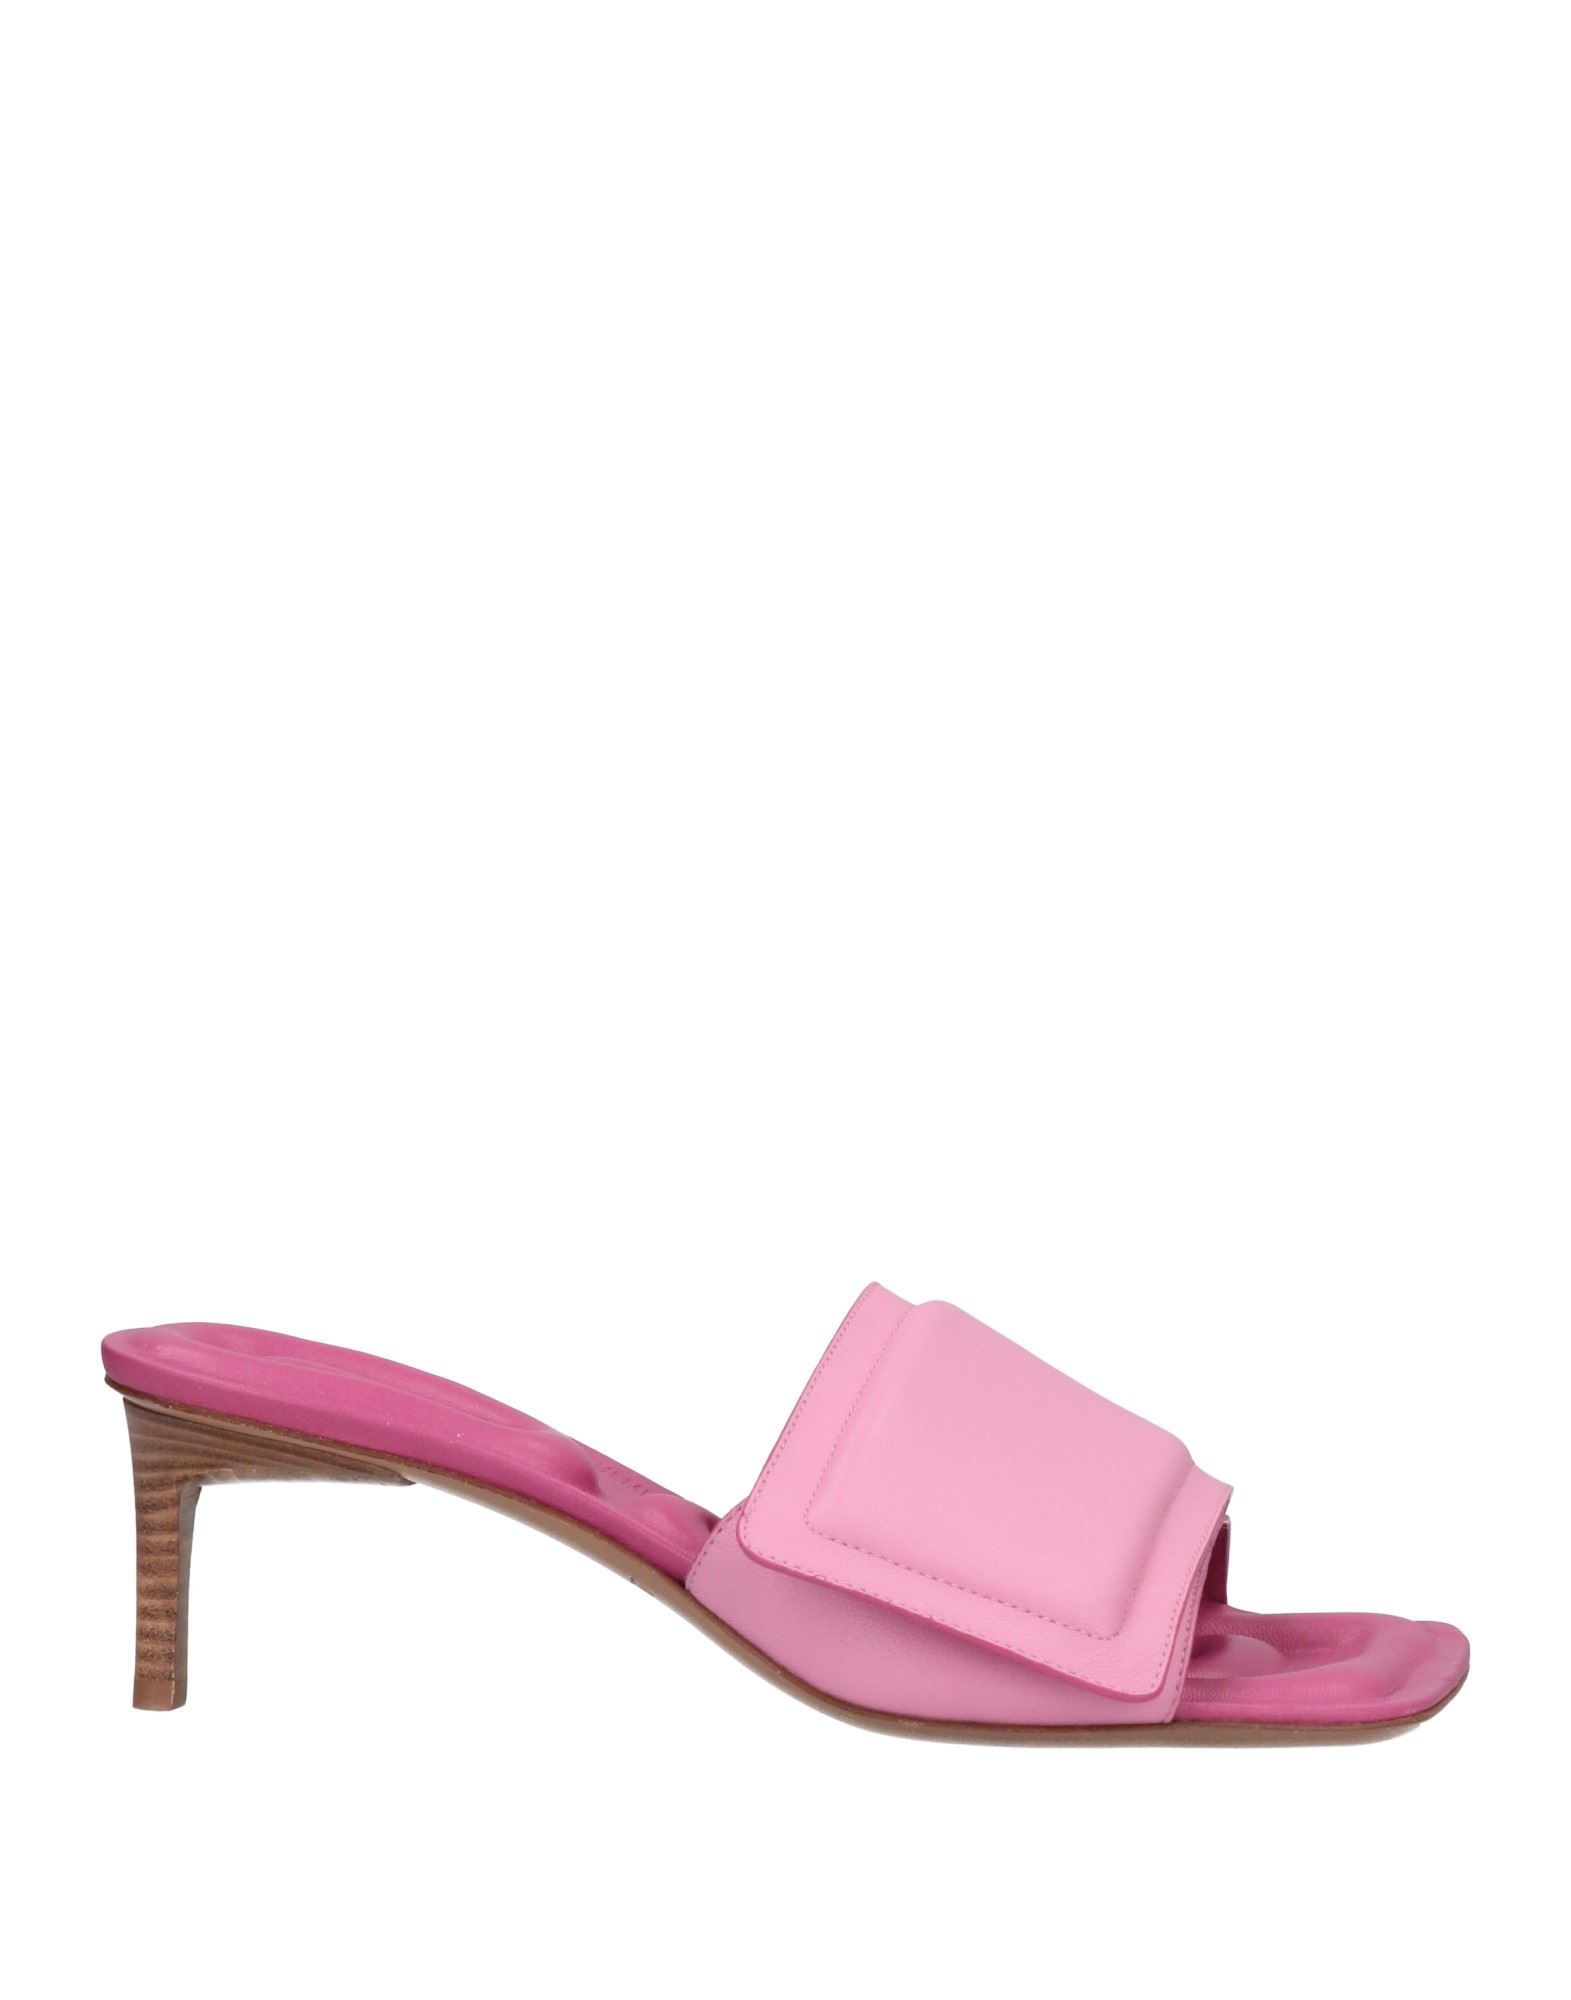 Shop Jacquemus Woman Sandals Pink Size 7 Soft Leather